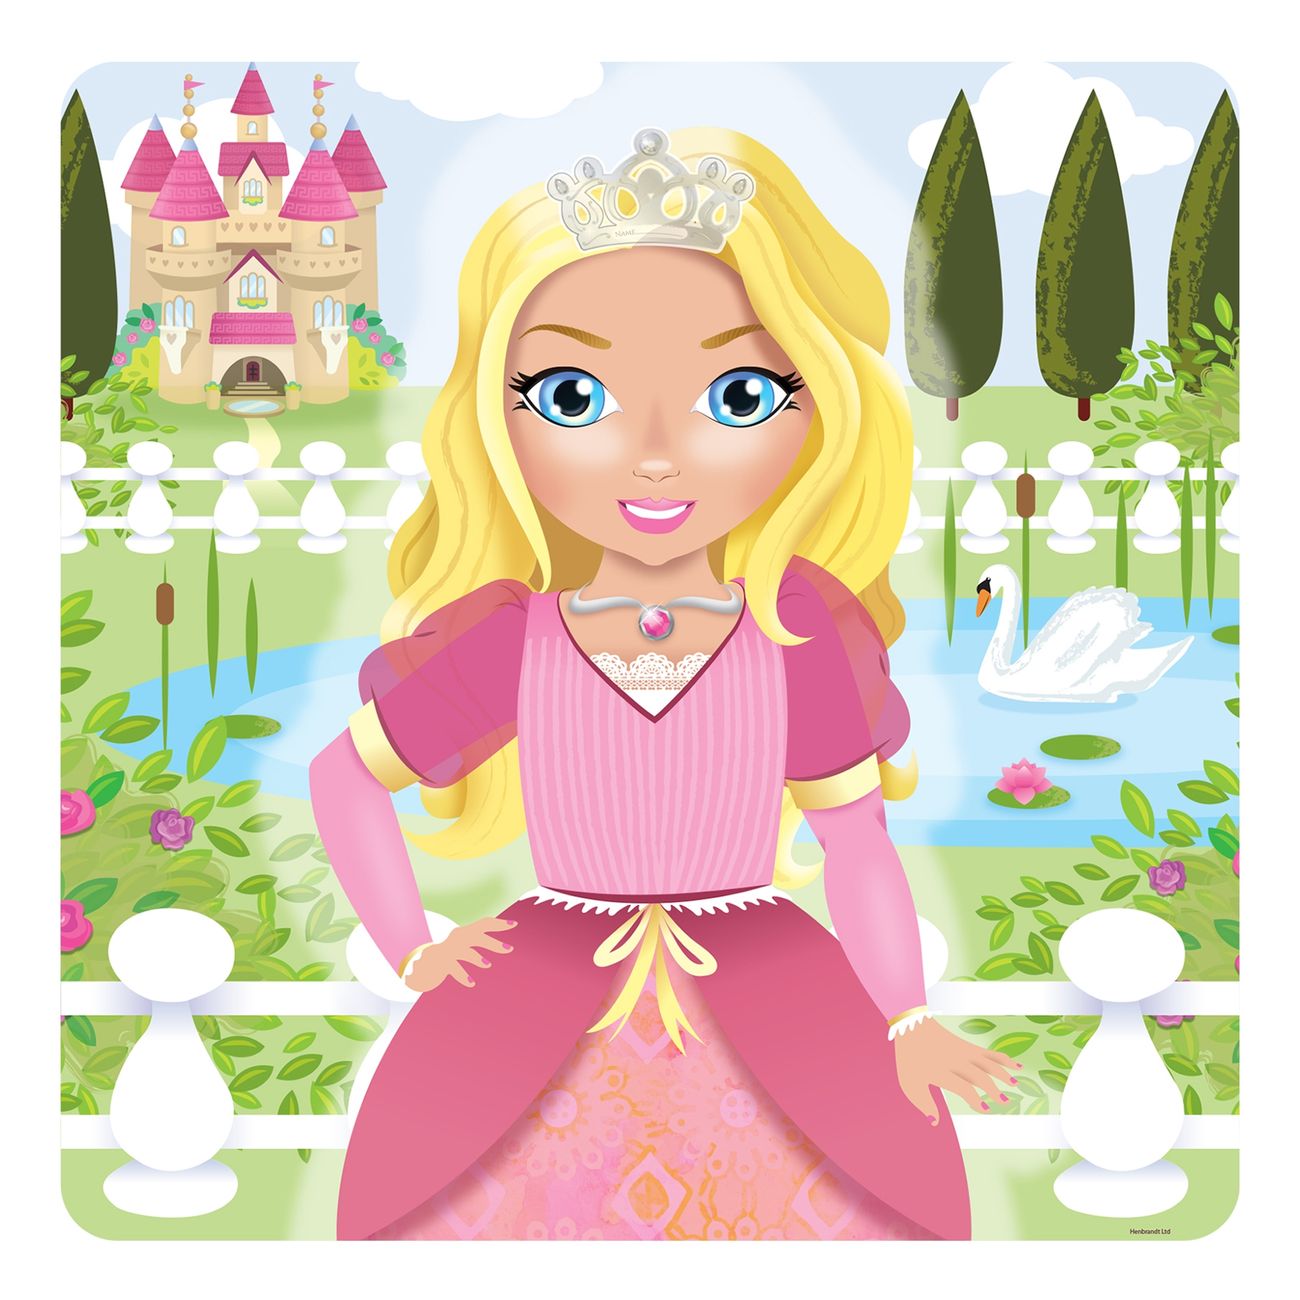 pinna-kronan-spel-prinsessa-88859-2